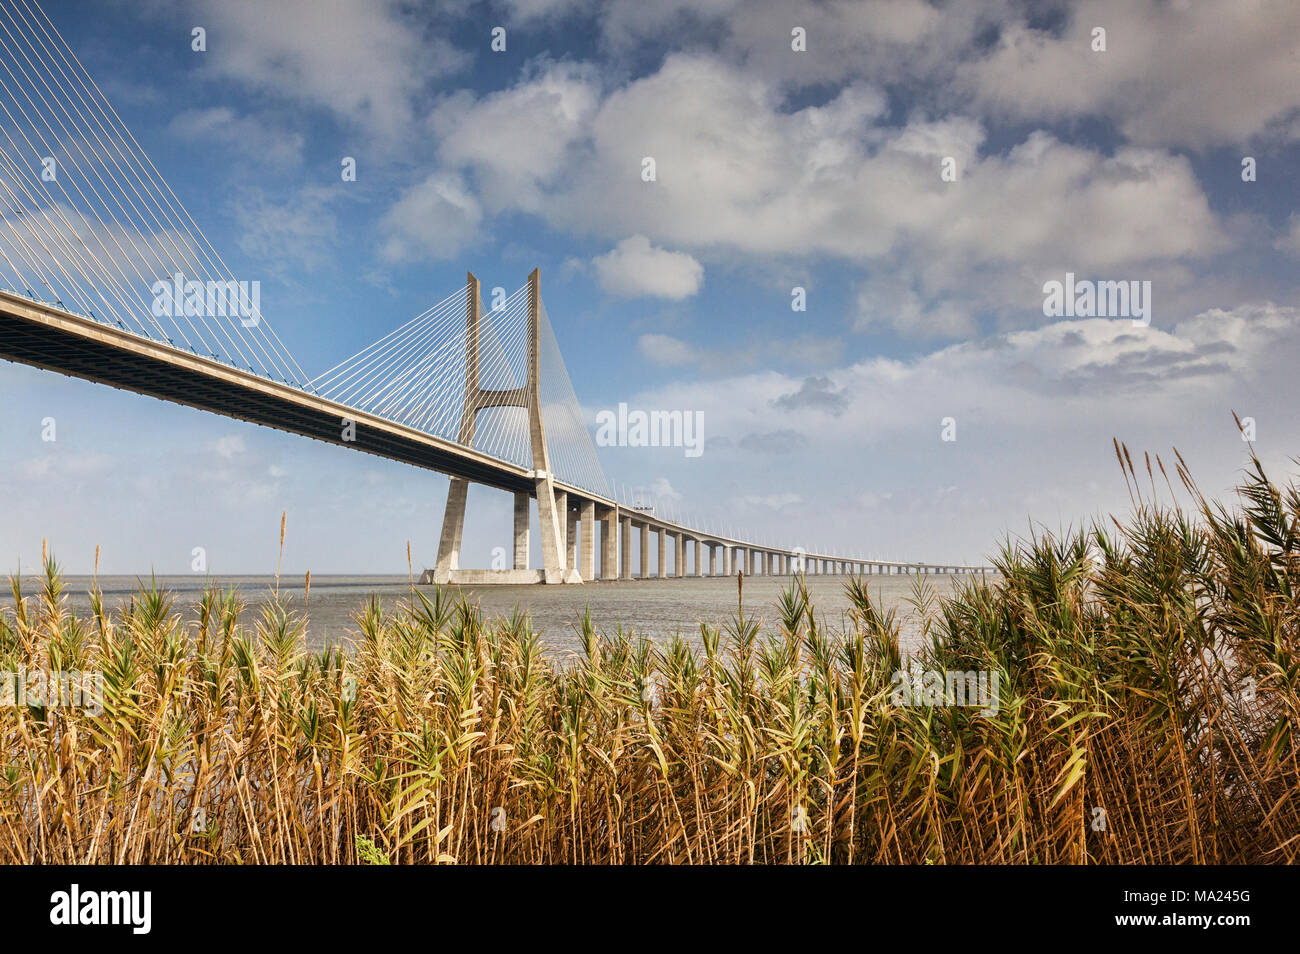 Pont Vasco da Gama, le 17km pont à haubans qui enjambe le fleuve Tage près de Lisbonne, Portugal. Banque D'Images